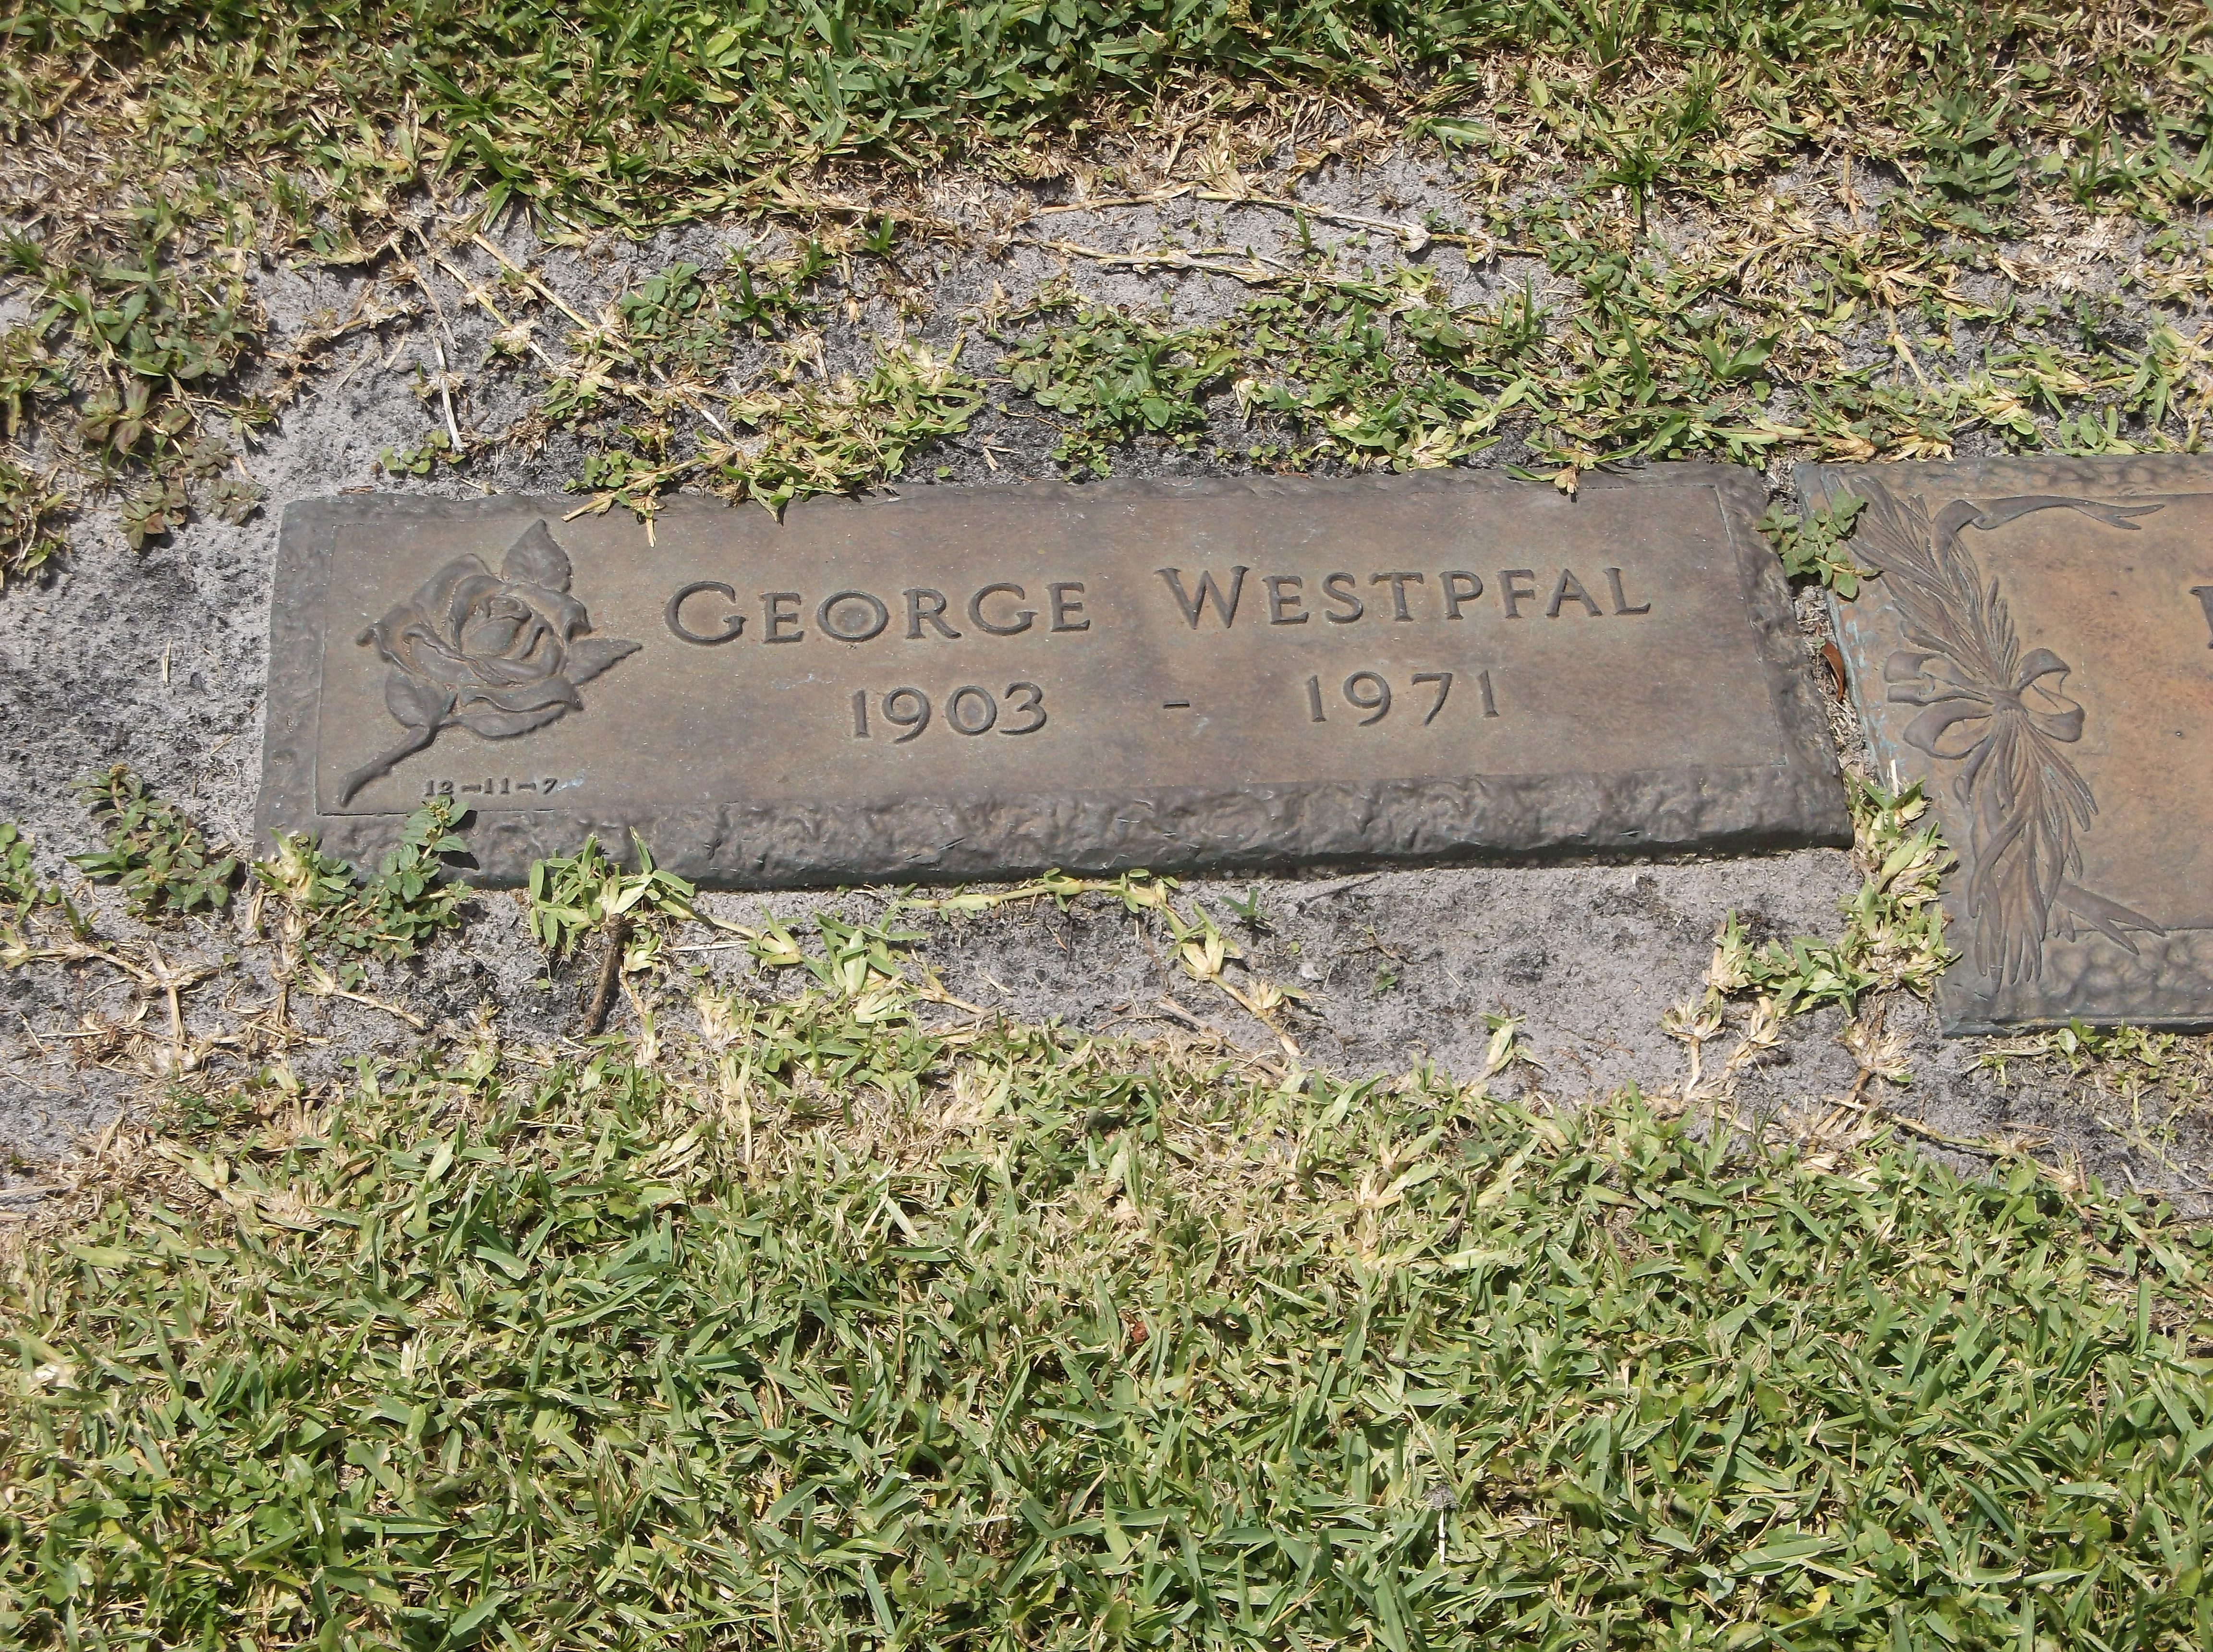 George Westpfal